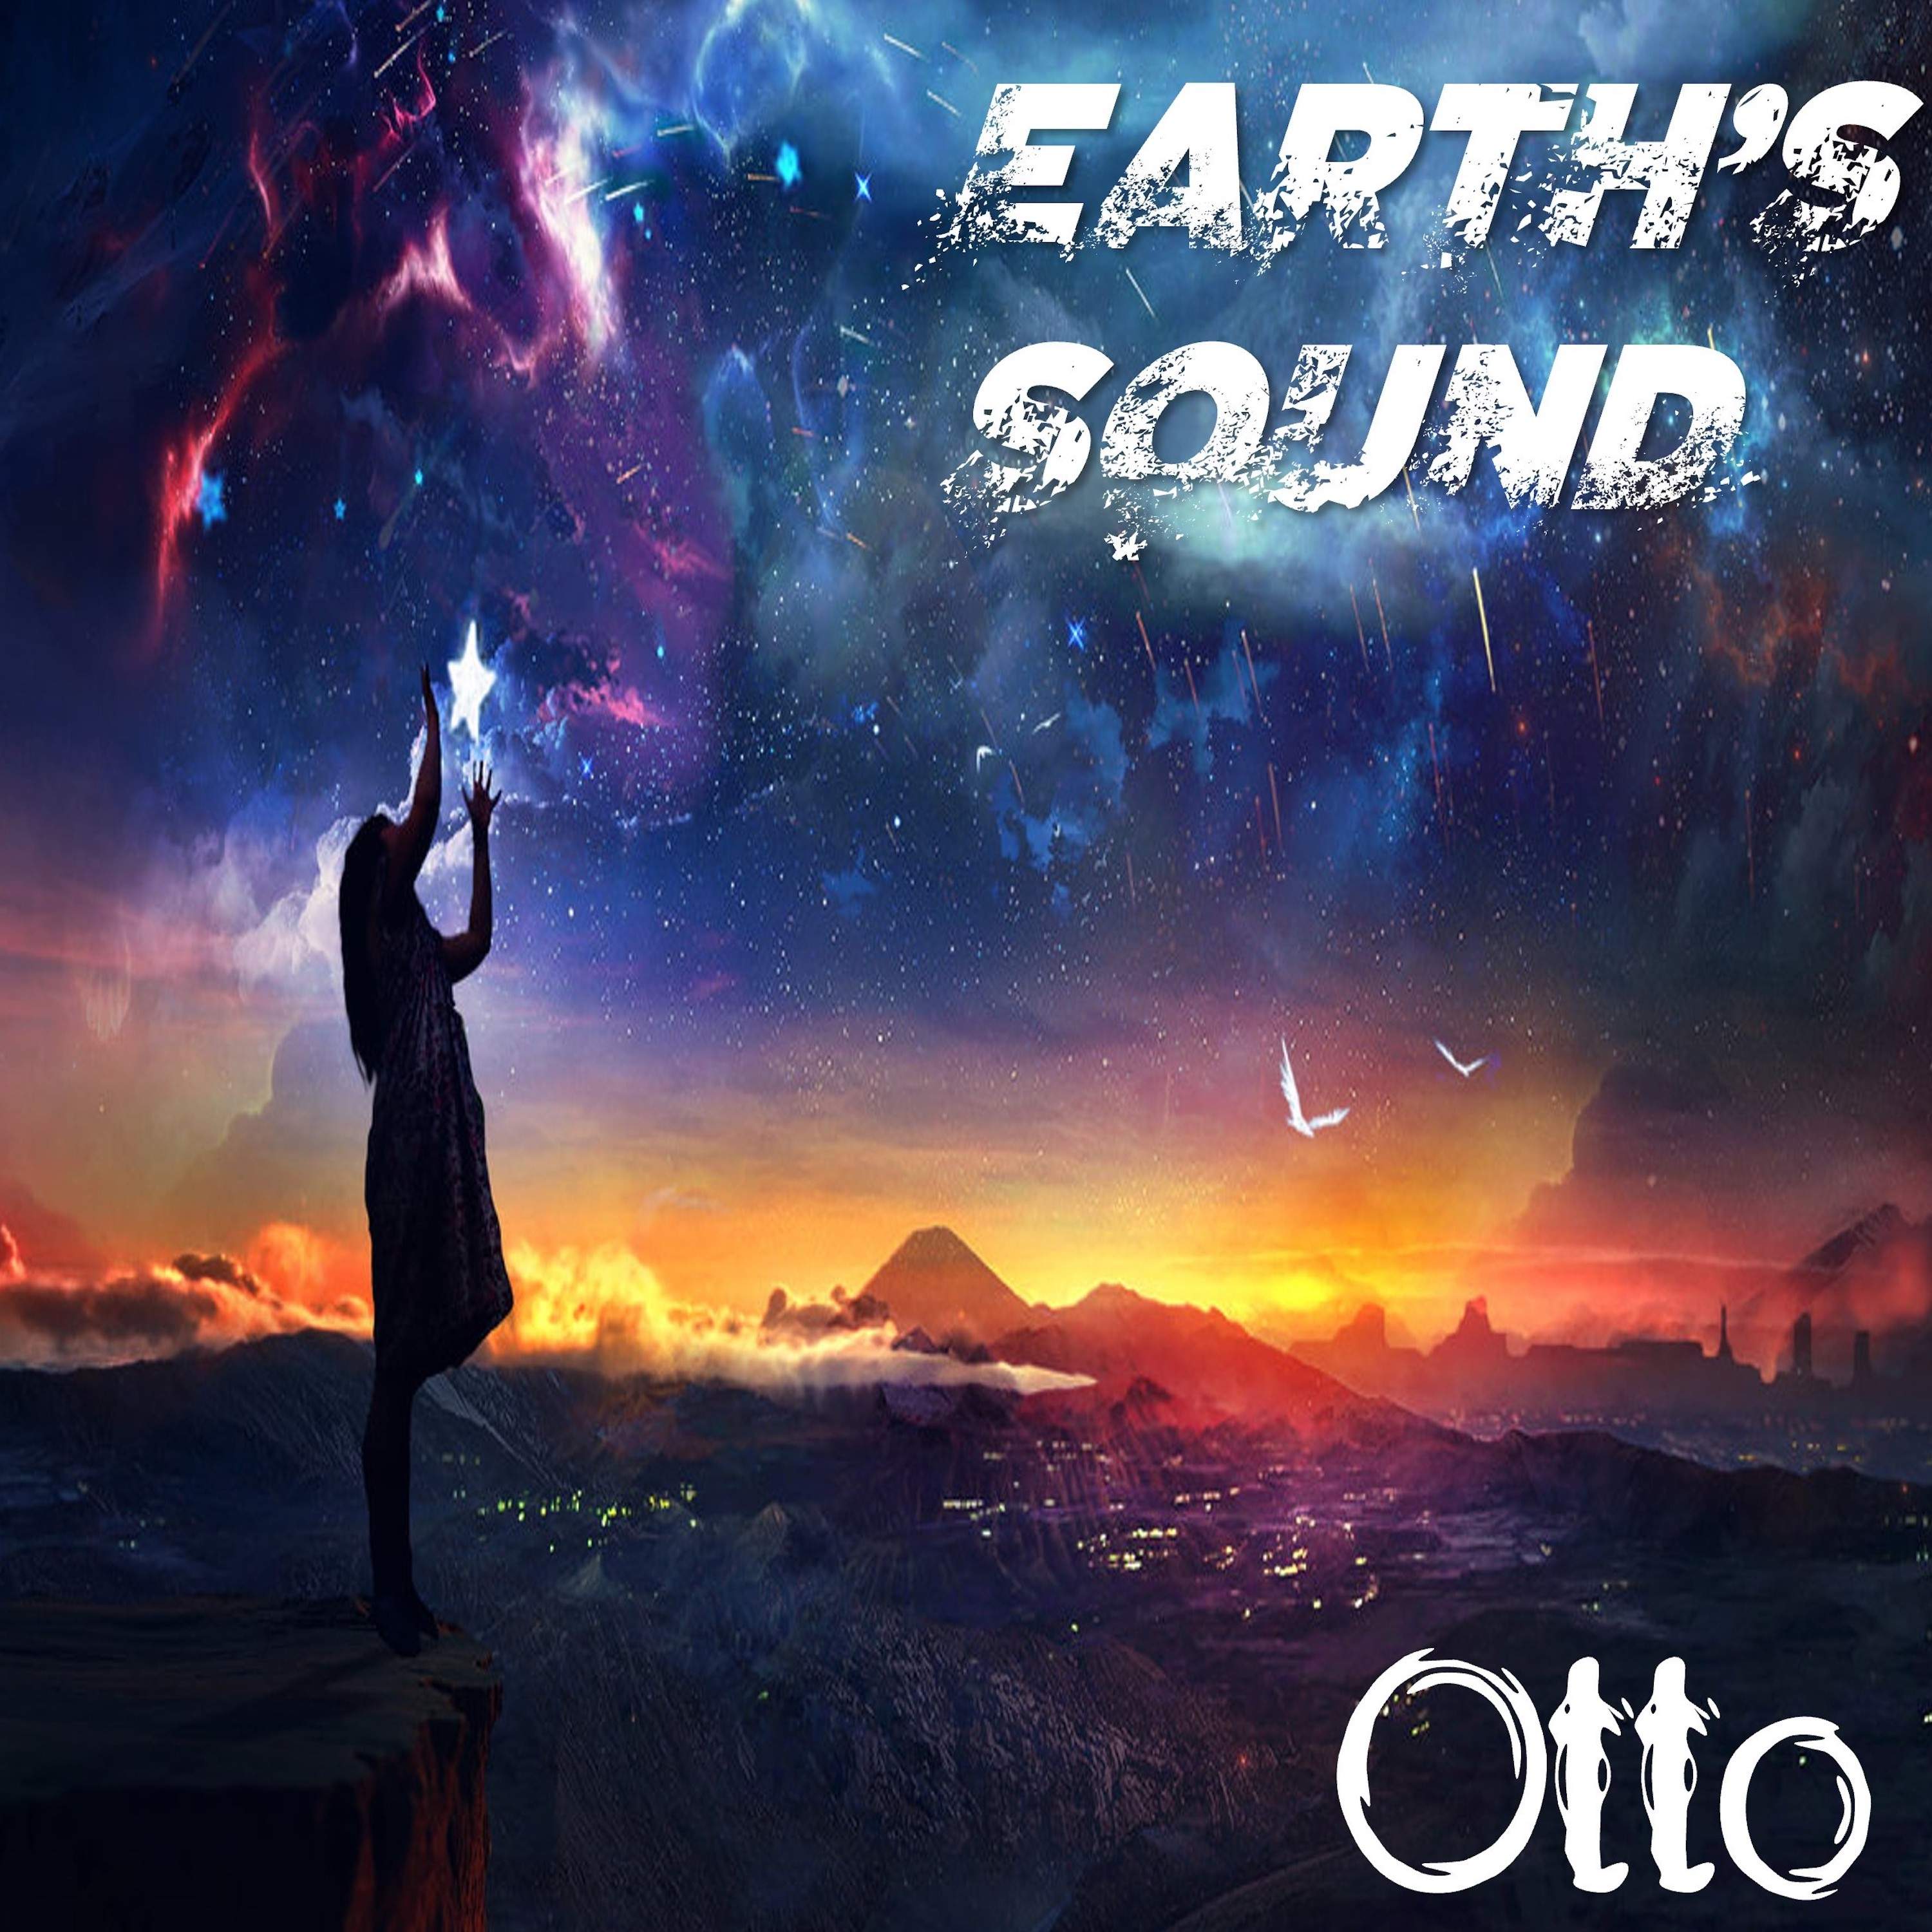 EARTH'S SOUND è il nuovo album di OTTO dedicato alla Giornata Mondiale della Terra!